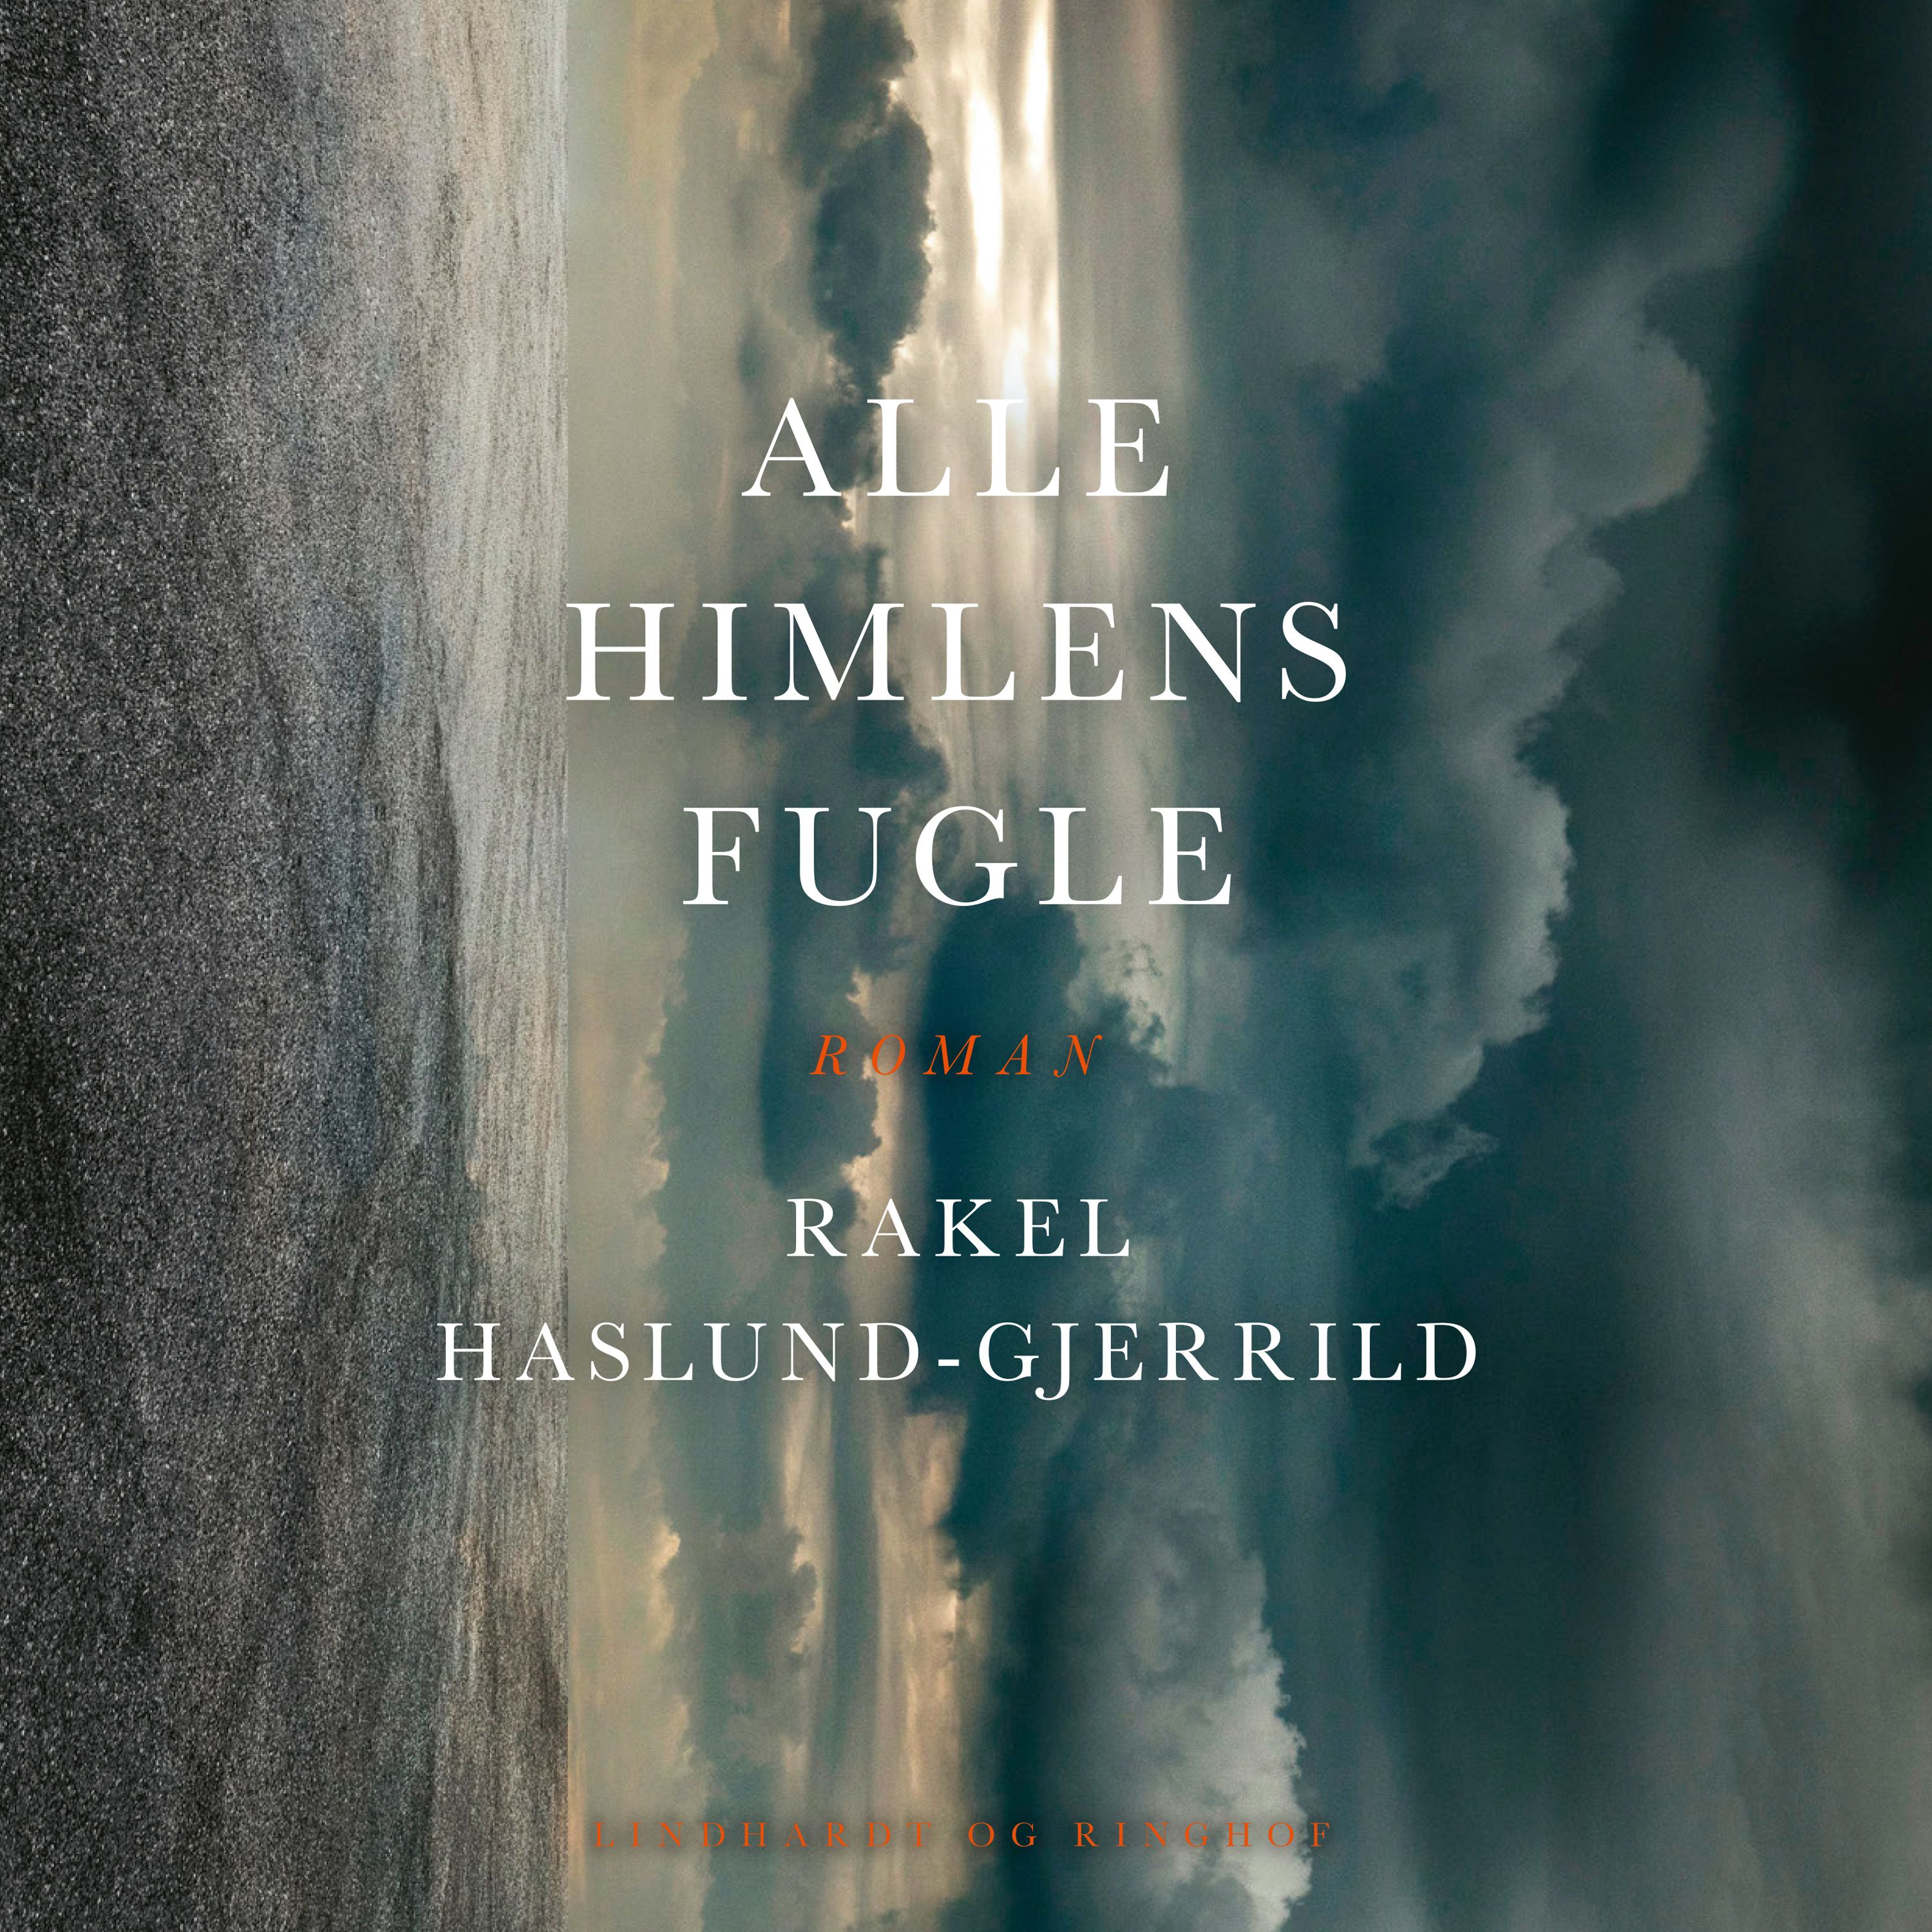 Alle himlens fugle, ljudbok av Rakel Haslund-Gjerrild